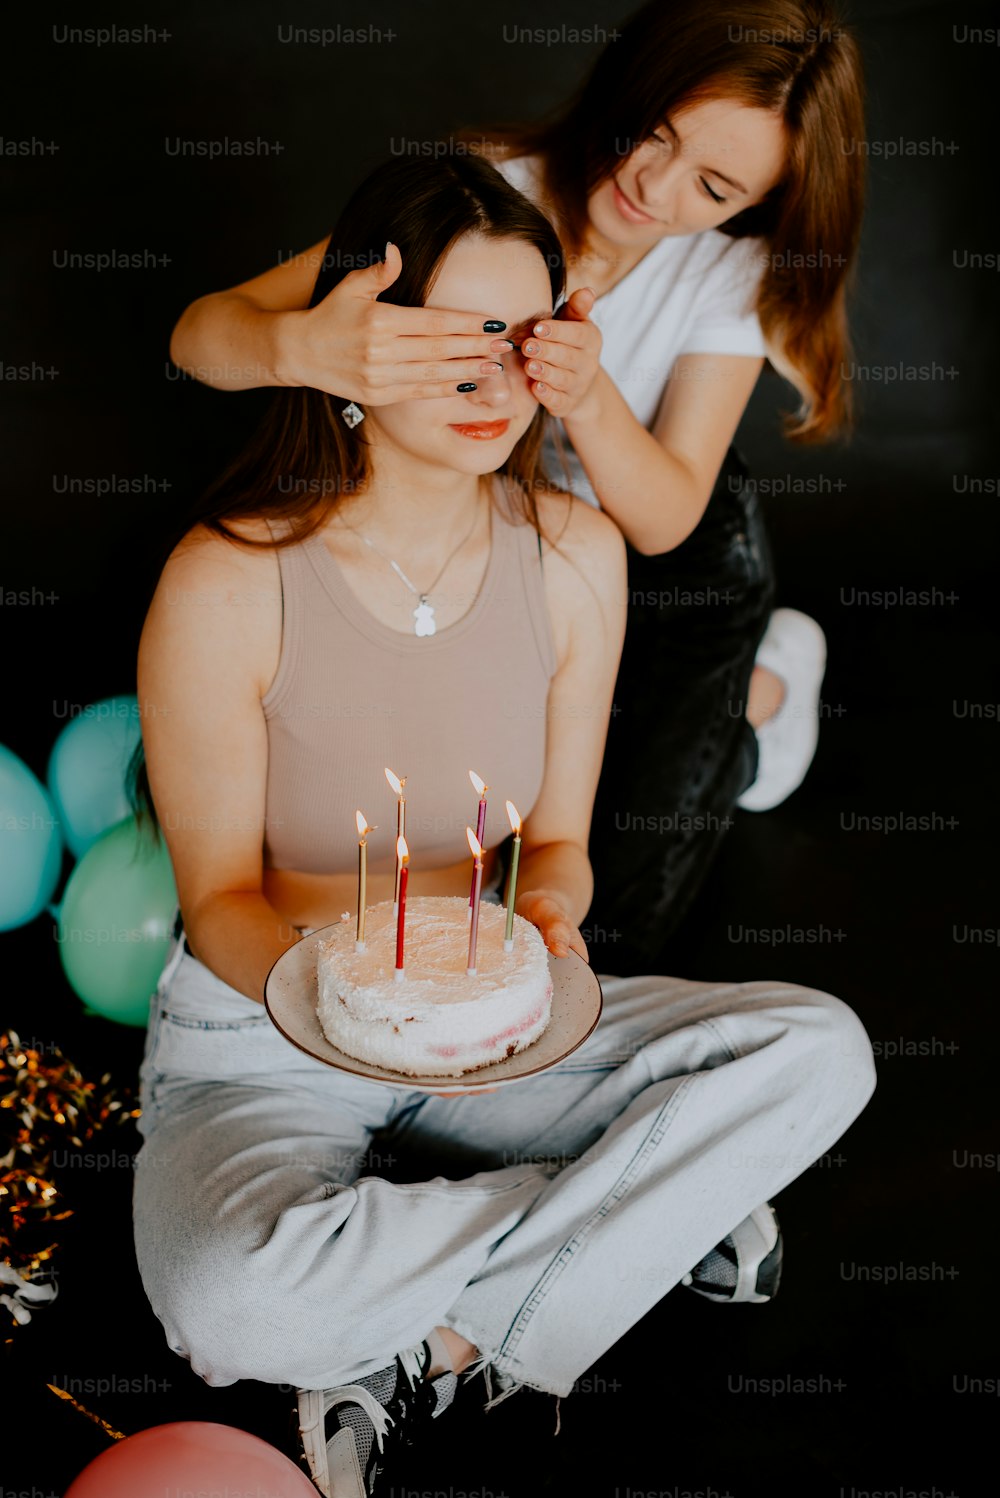 une femme assise devant un gâteau avec des bougies dessus